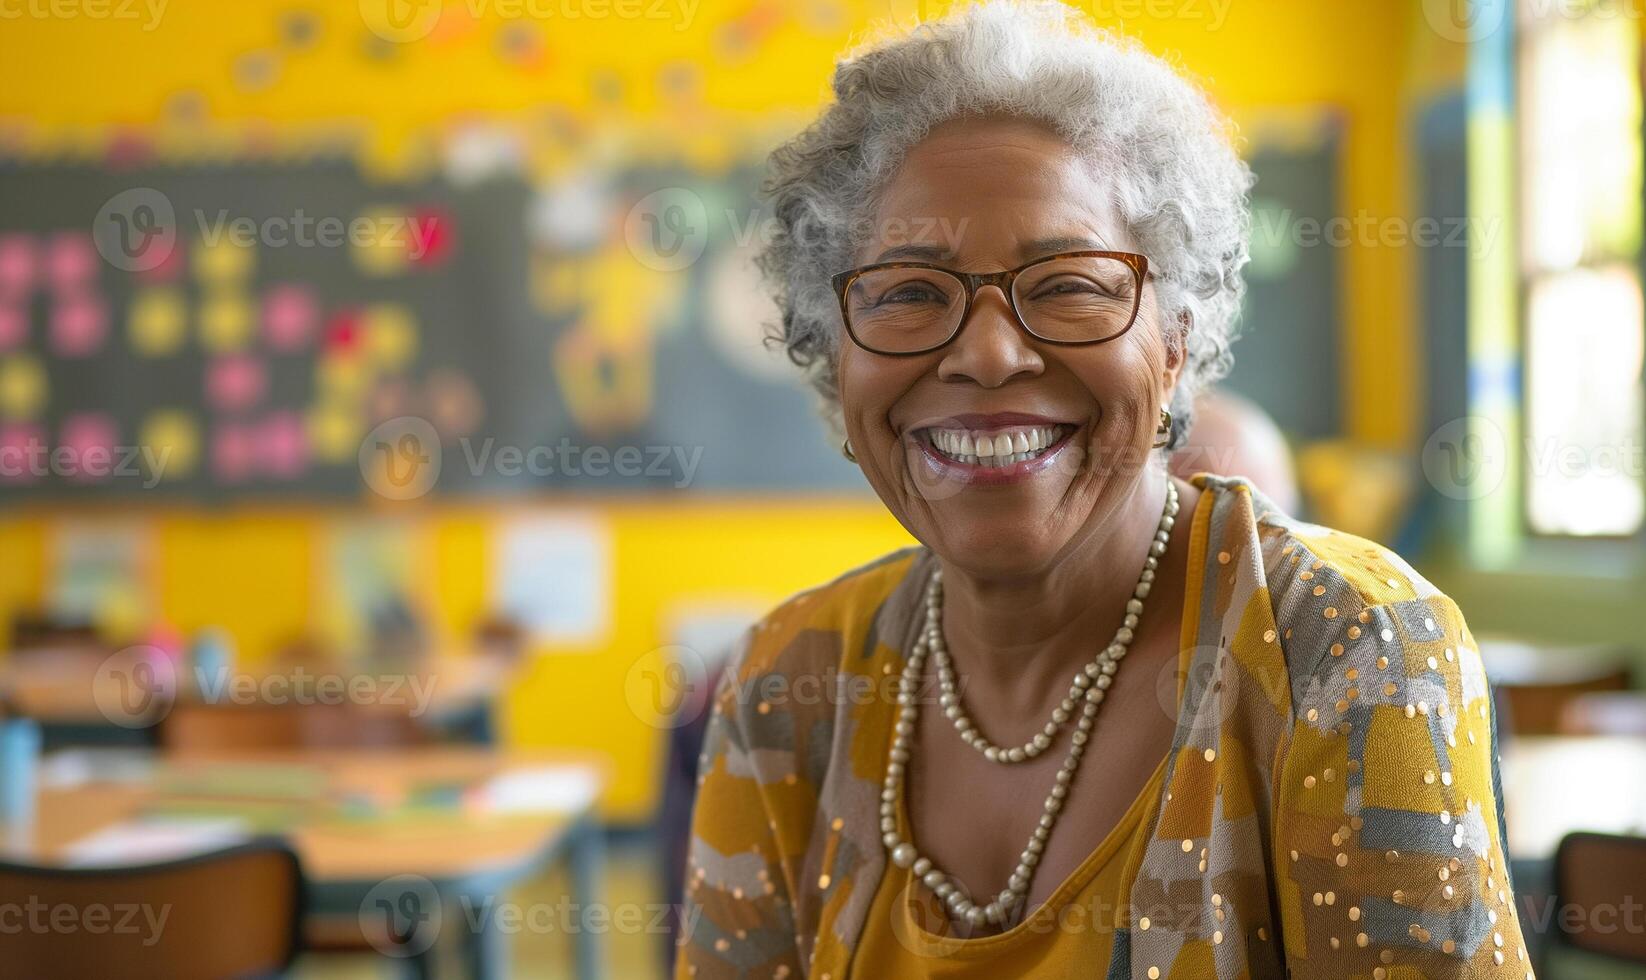 expérimenté africain américain éducateur inspirant élèves dans une salle de cours réglage photo